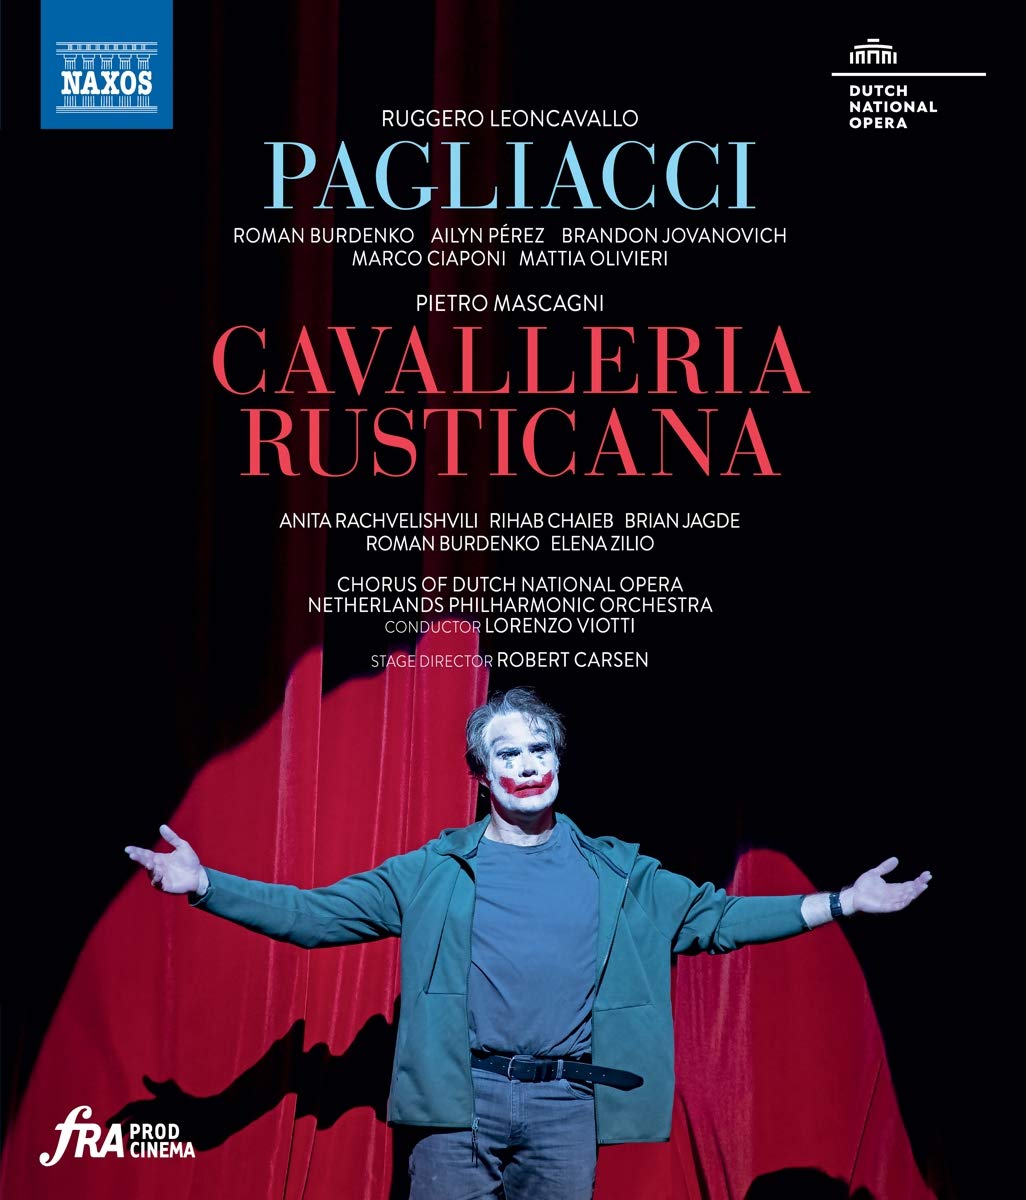 Music Blu-Ray Ruggero Leoncavallo / Pietro Mascagni - Pagliacci / Cavalleria Rusticana NUOVO SIGILLATO, EDIZIONE DEL 08/03/2021 SUBITO DISPONIBILE